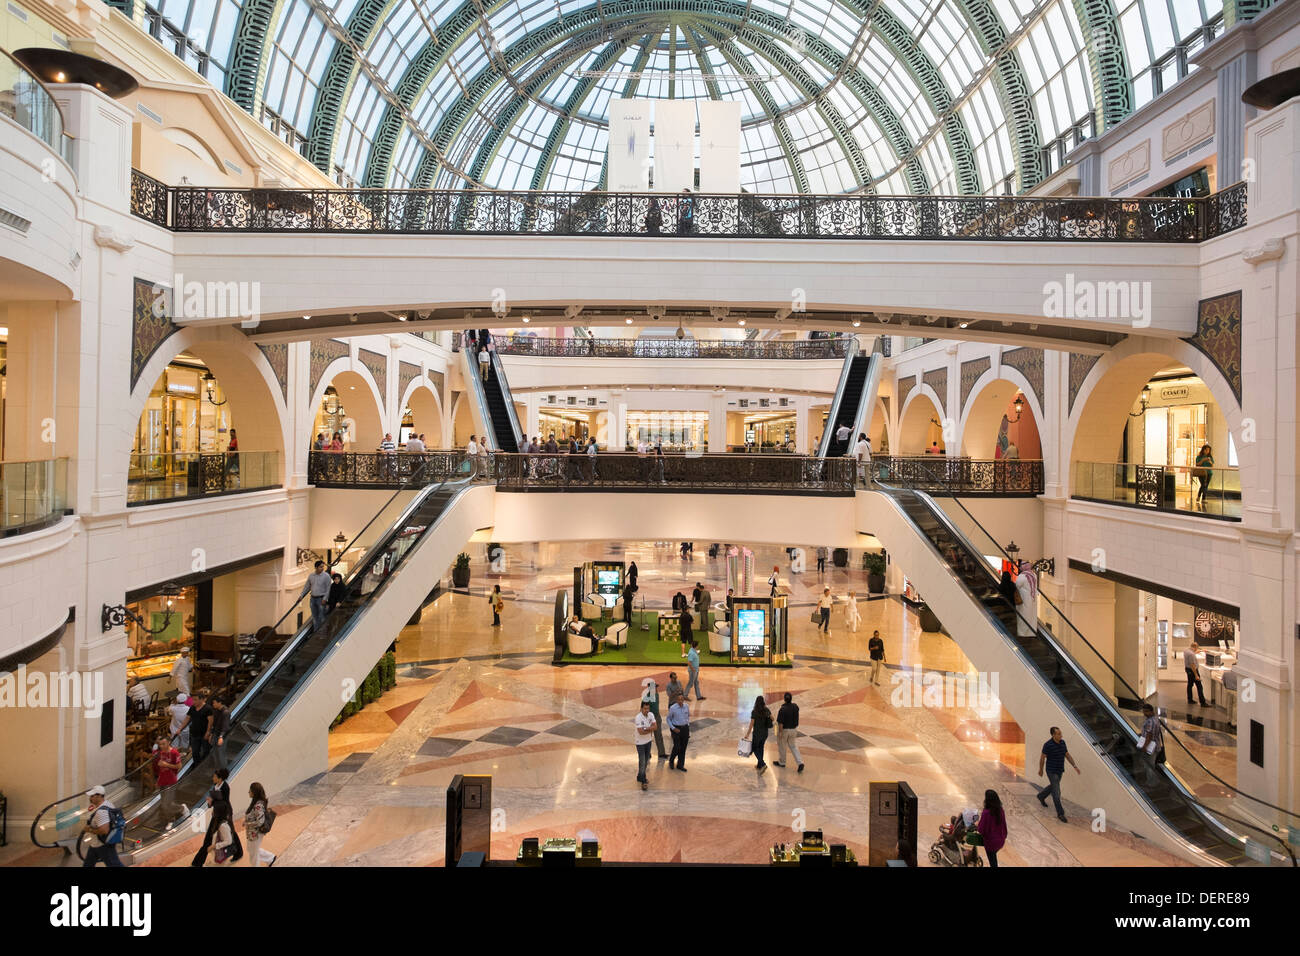 Innenraum der Mall des Einkaufszentrums Emirates in Dubai Vereinigte Arabische Emirate Stockfoto